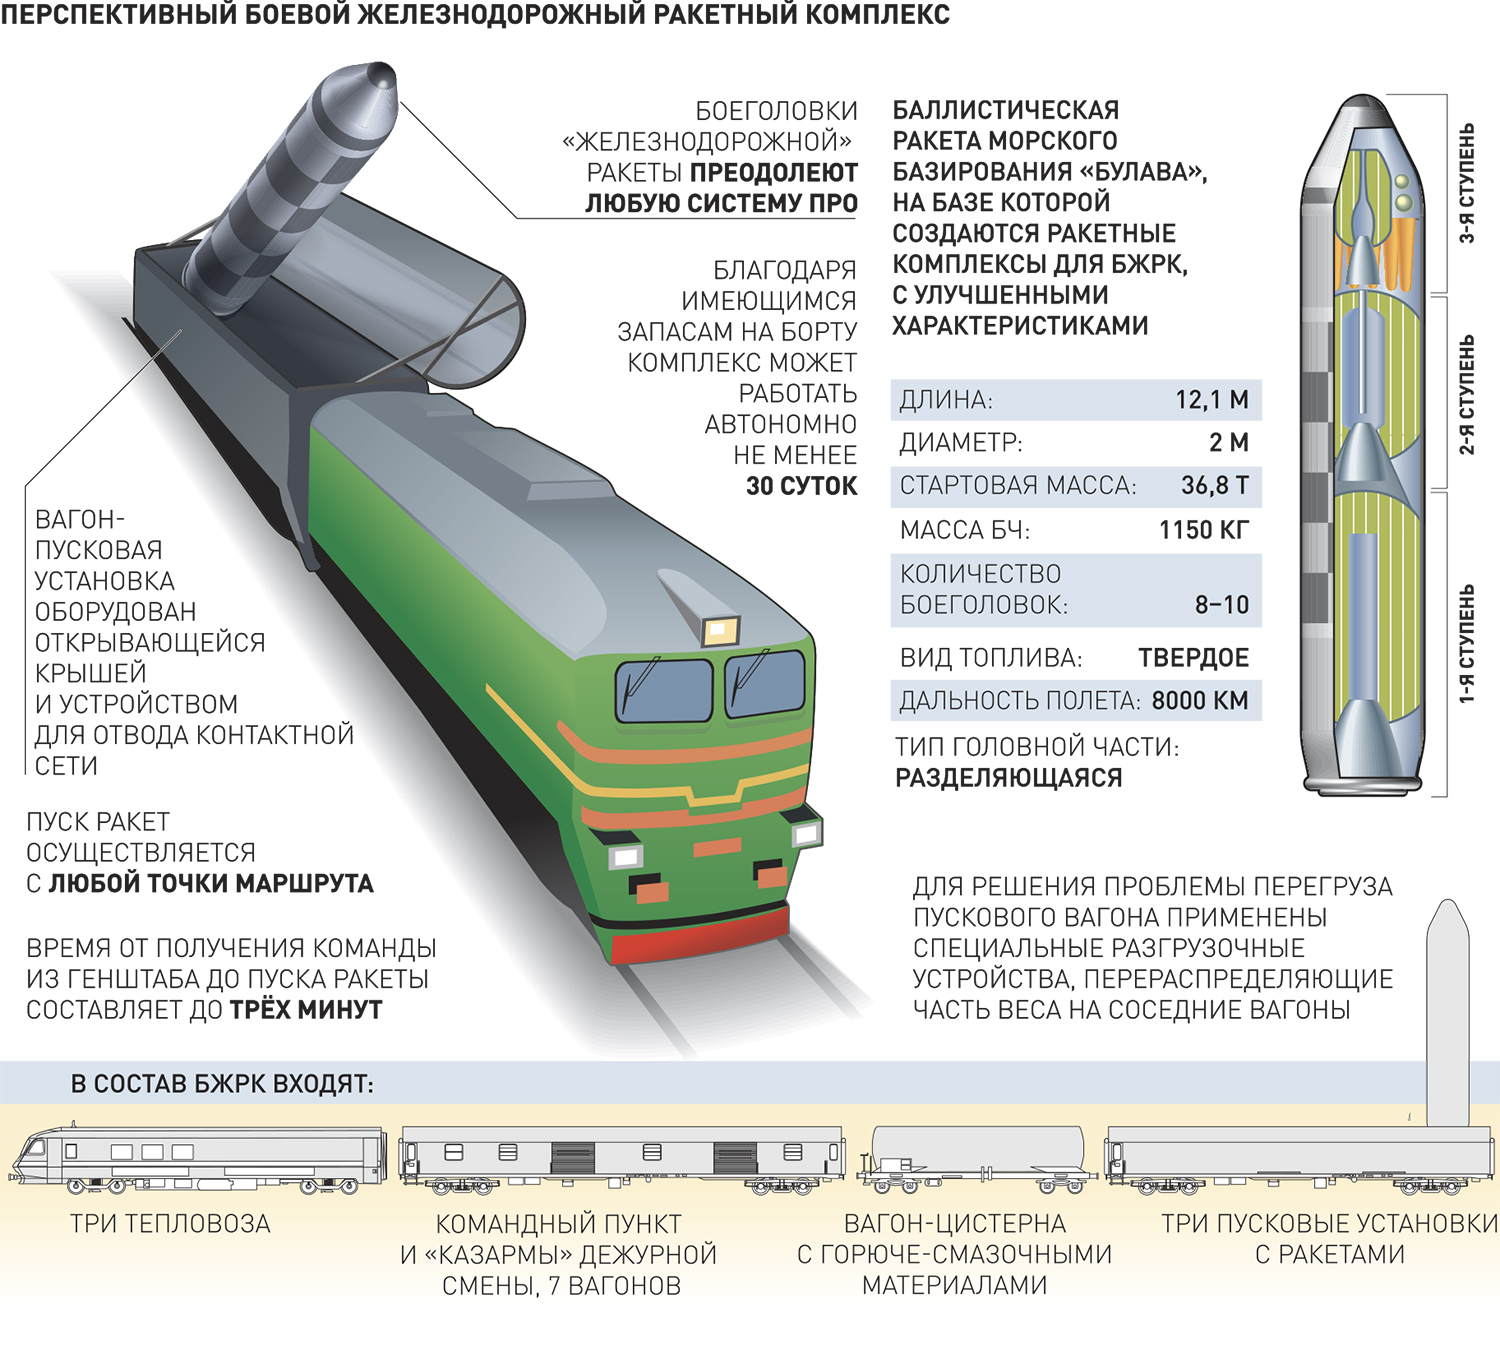 Разработка боевых железнодорожных комплексов нового поколения прекращена